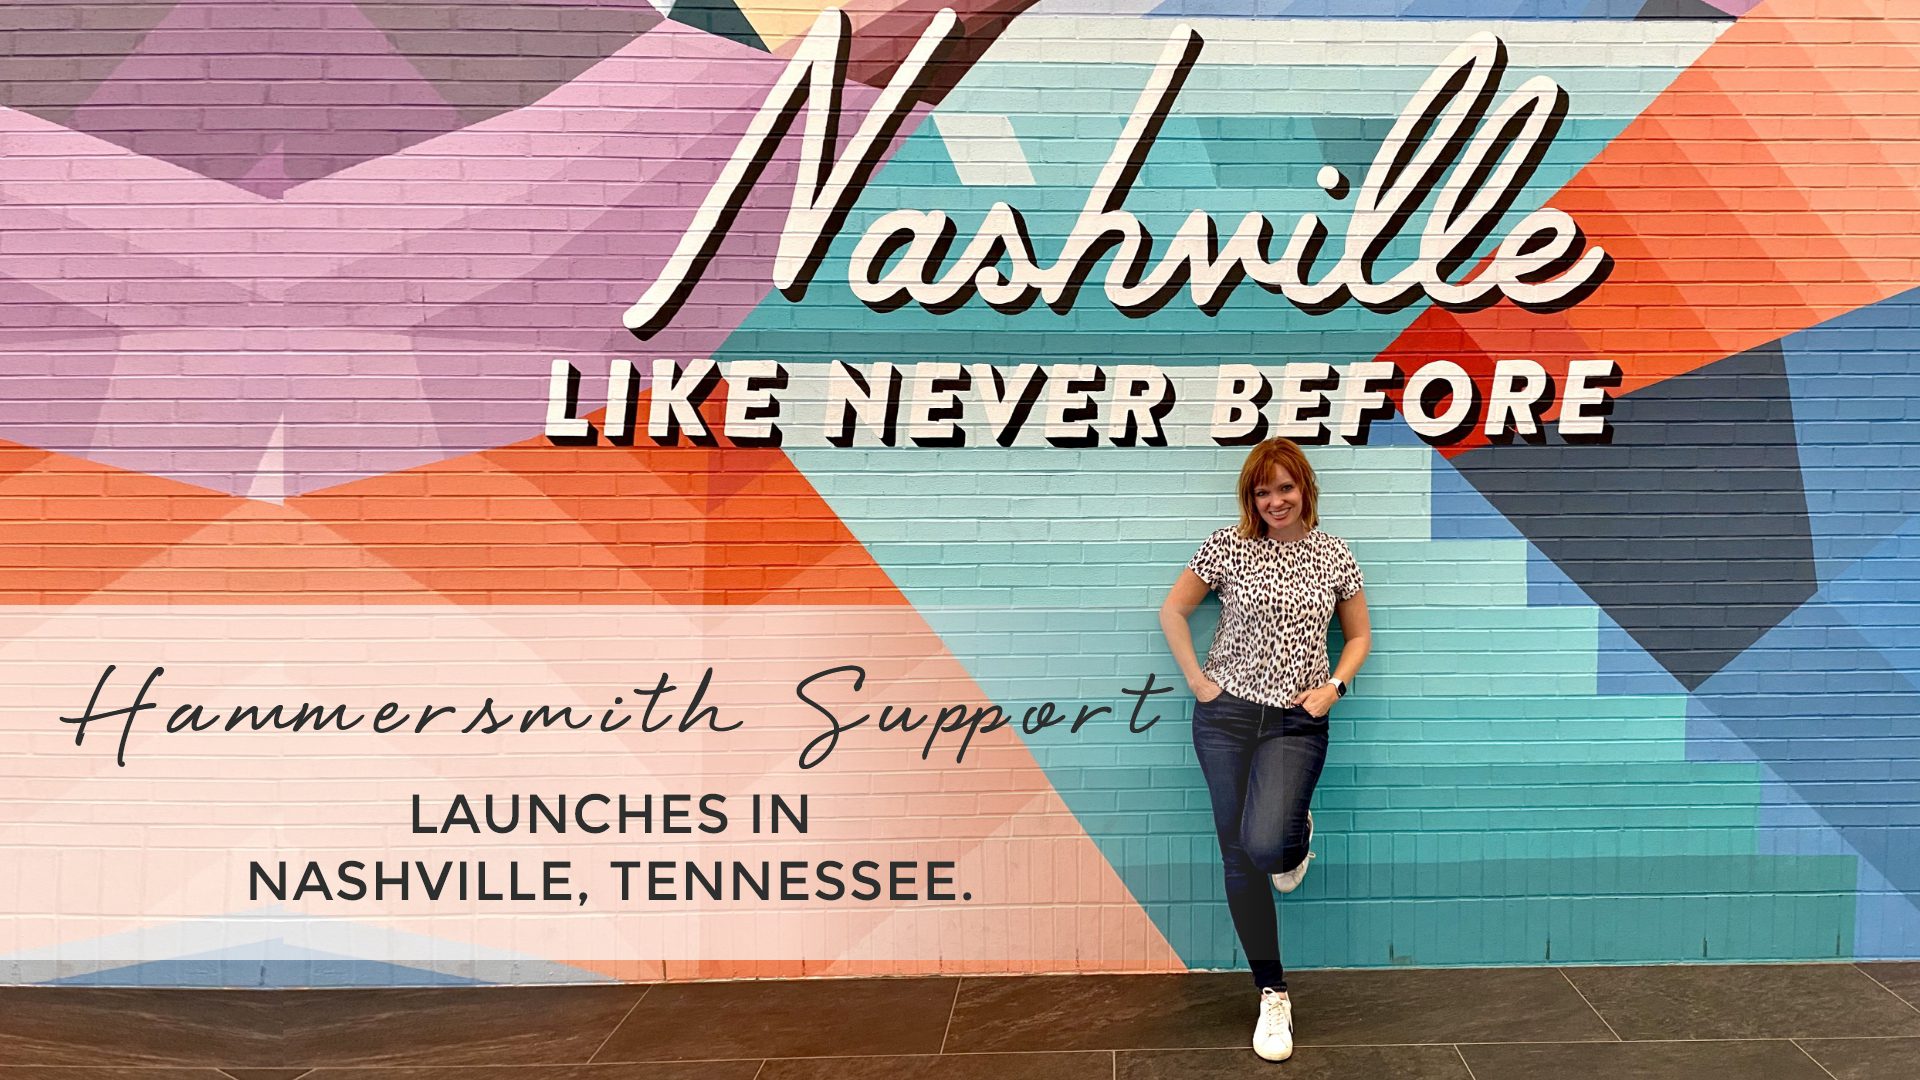 Hammersmith Support in Nashville